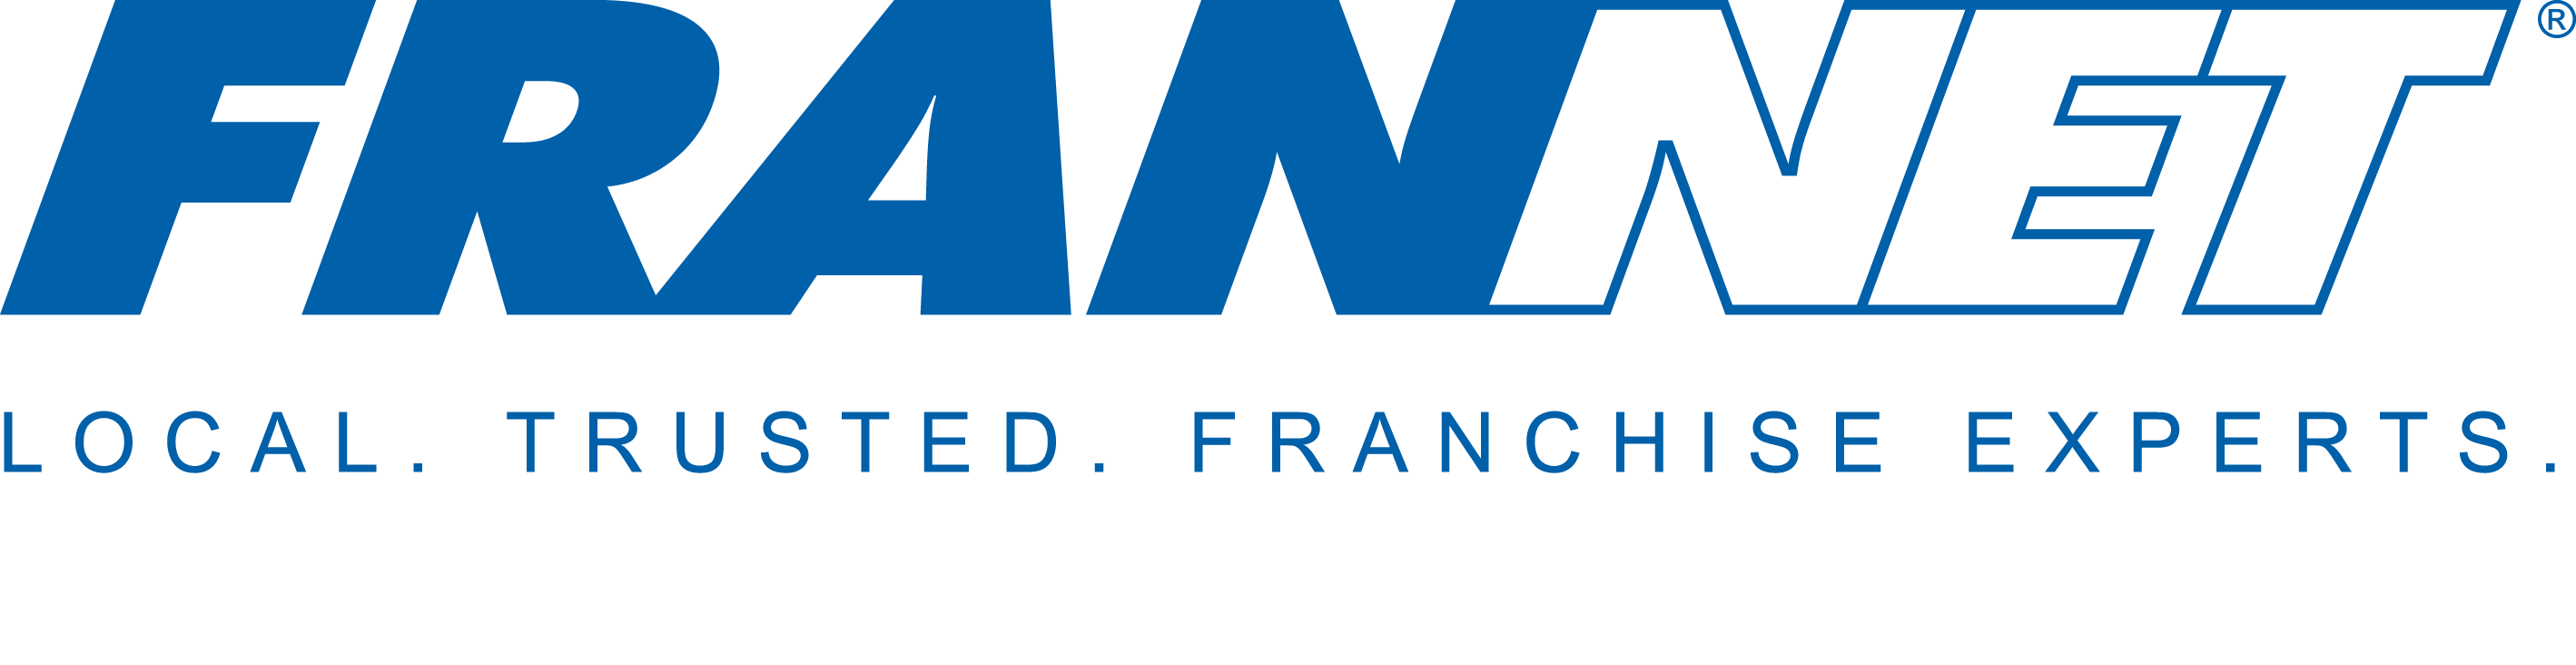 FranNet logo